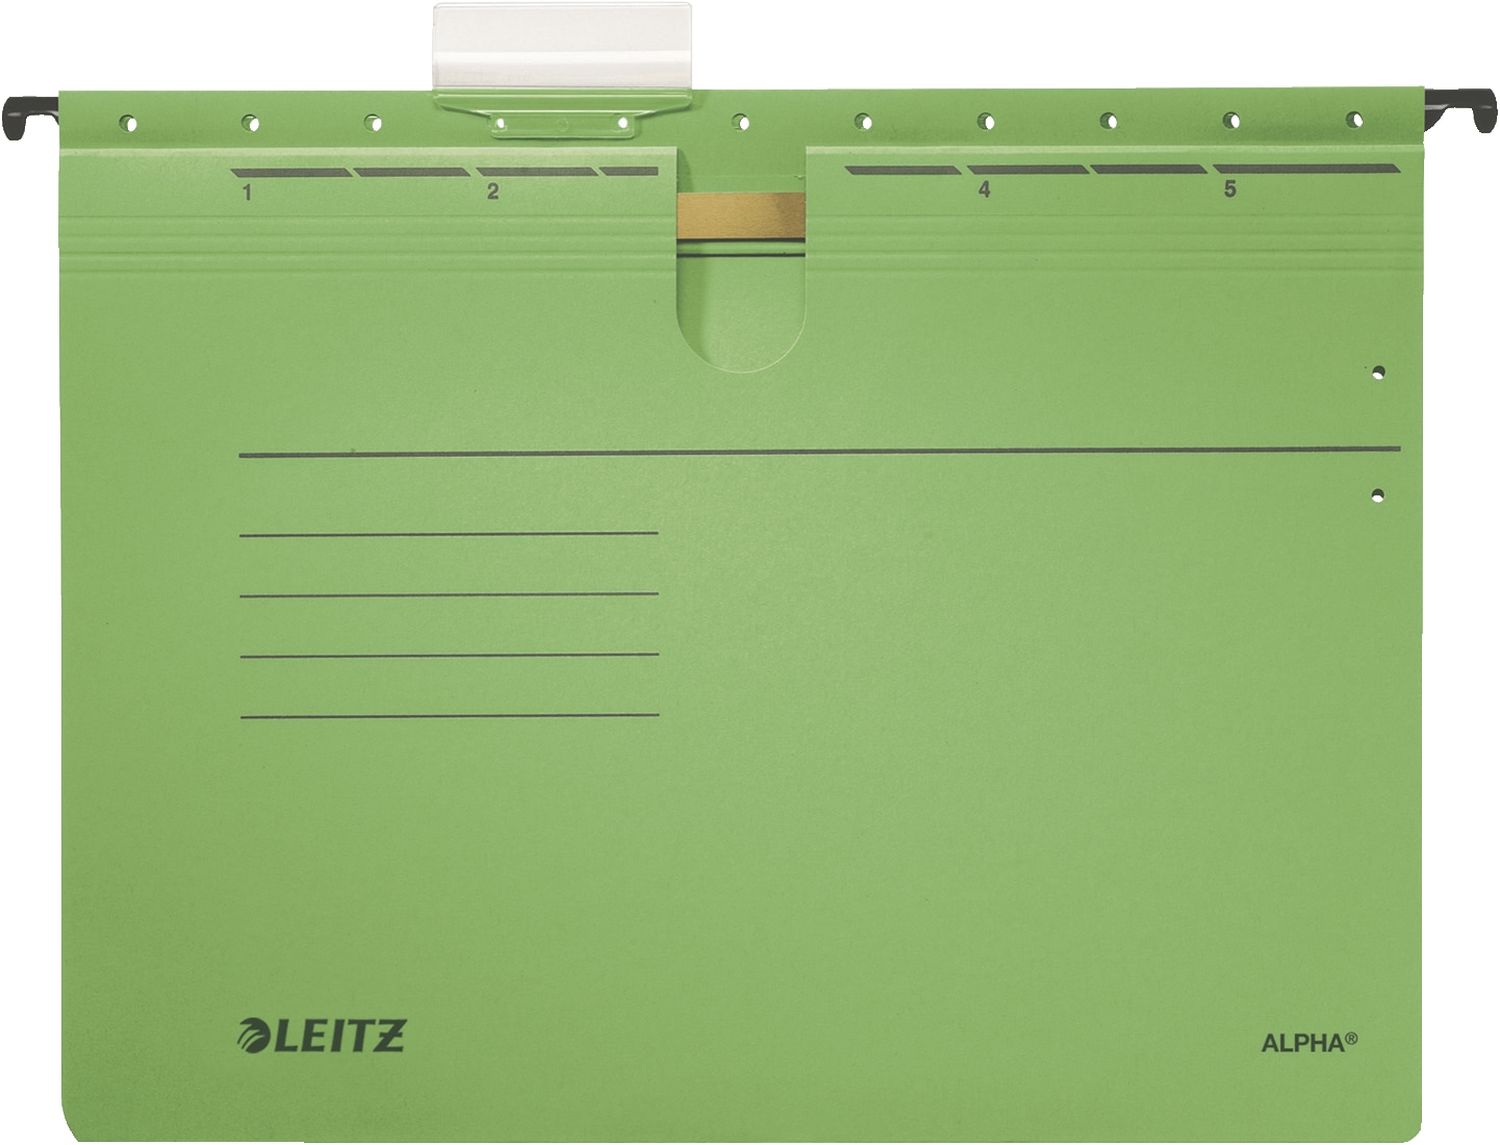 Hängehefter Leitz ALPHA® 1984-30-55, DIN A4, kaufmännische Heftung, Pendarec-Karton 275g, grün, 5 Stück